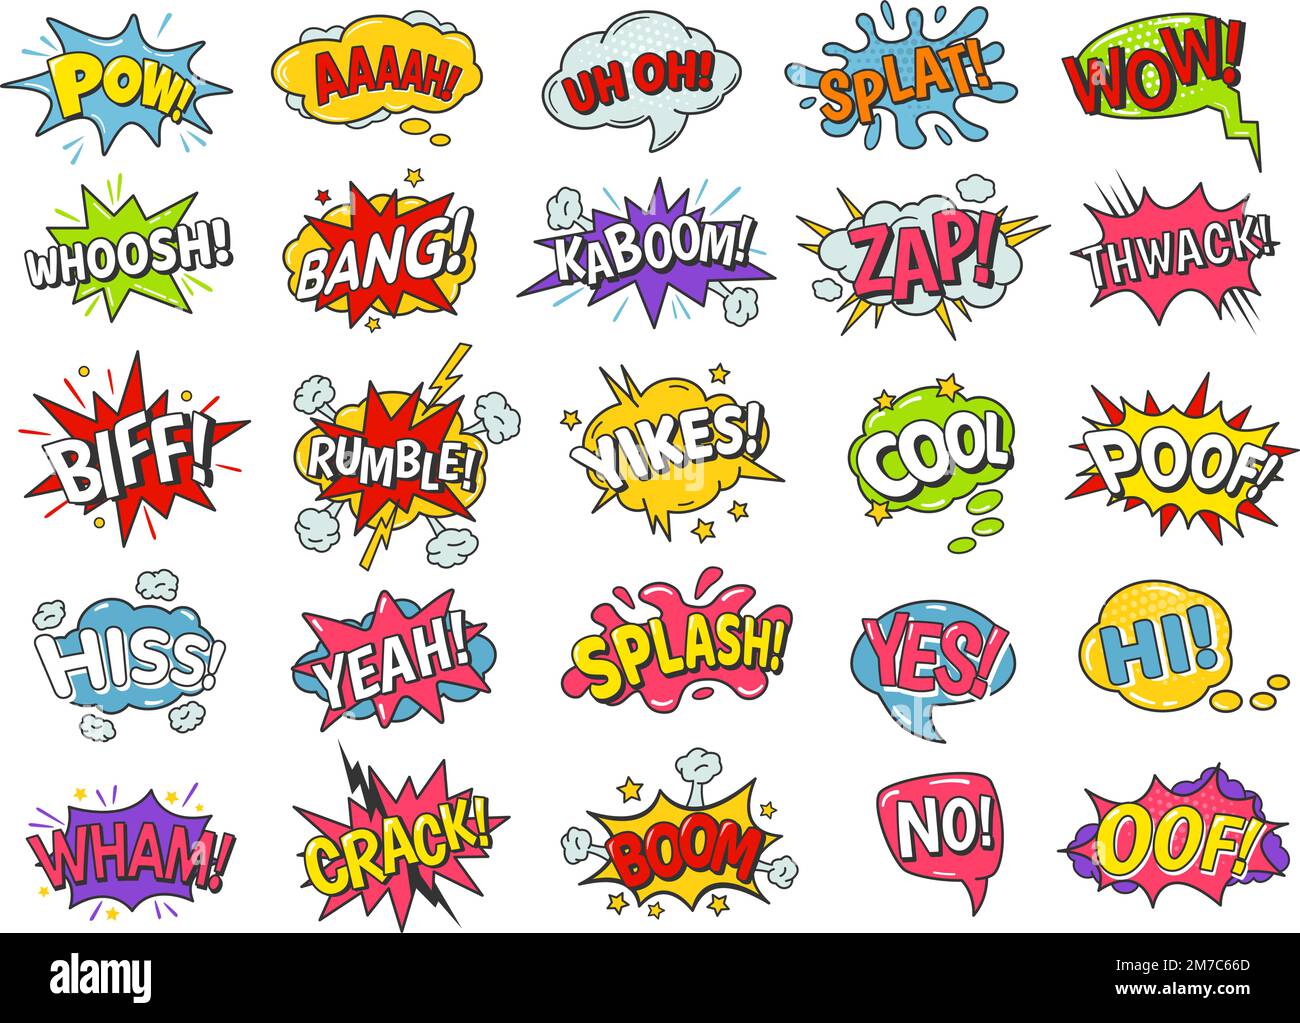 Comicbuch-Blasen. Cartoon-Sprechballons mit Boom-Bang-Explosion, Platsch- und Puff-, Rumpel- und Wham-Effekten. Komische Textvektorgruppe Stock Vektor